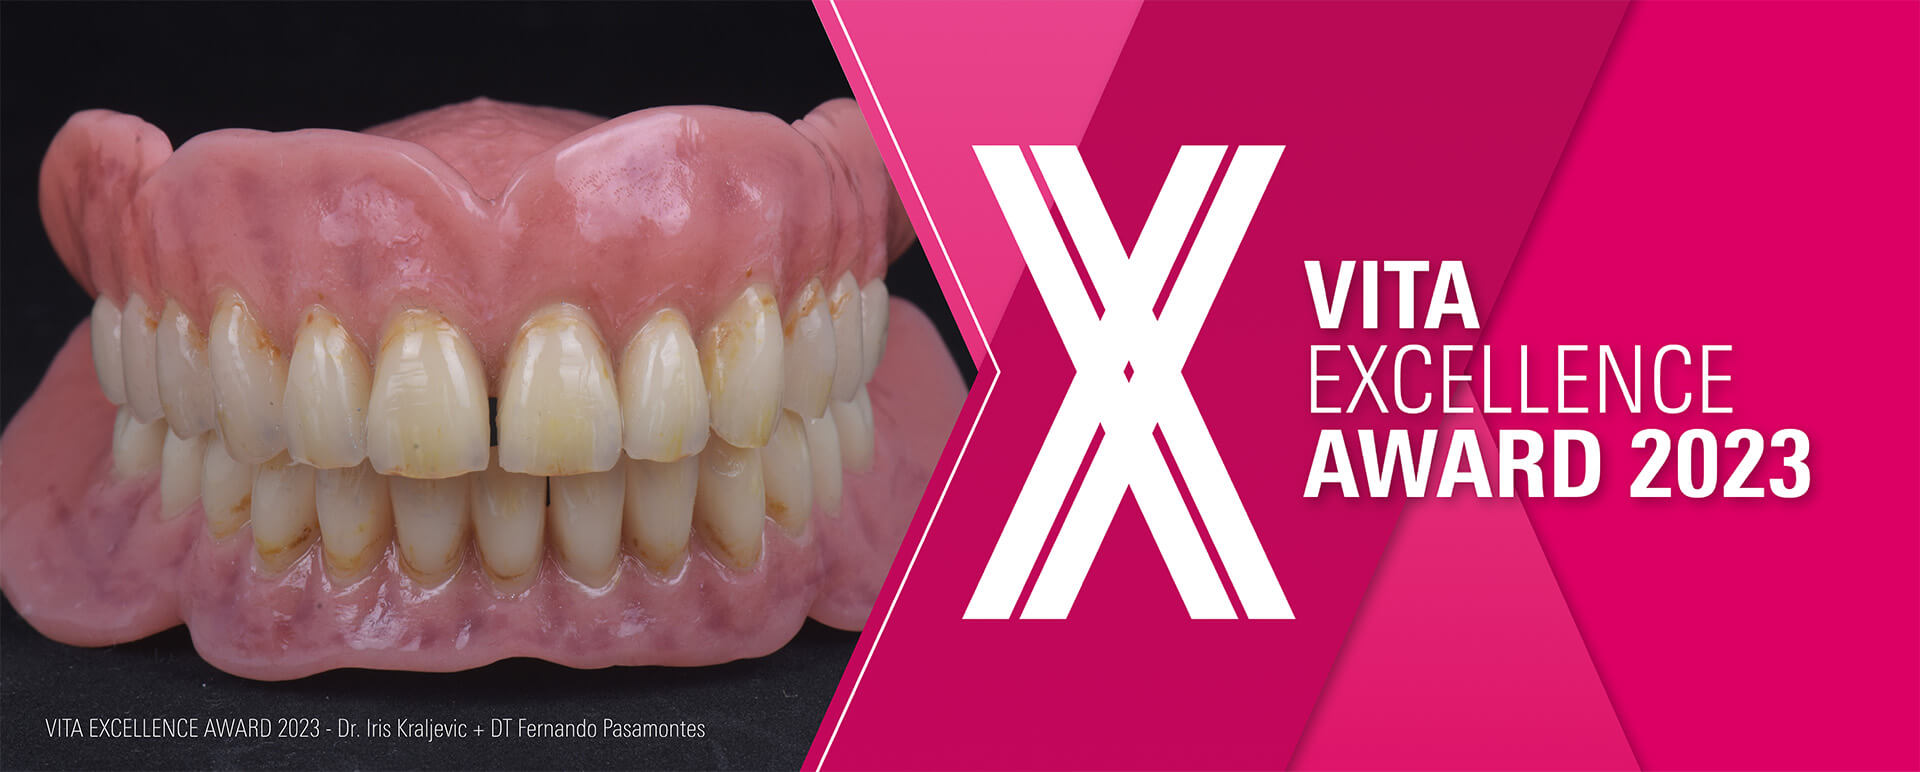 Eine Zahnprothese neben dem Logo des ITA Excellence Awards 2023